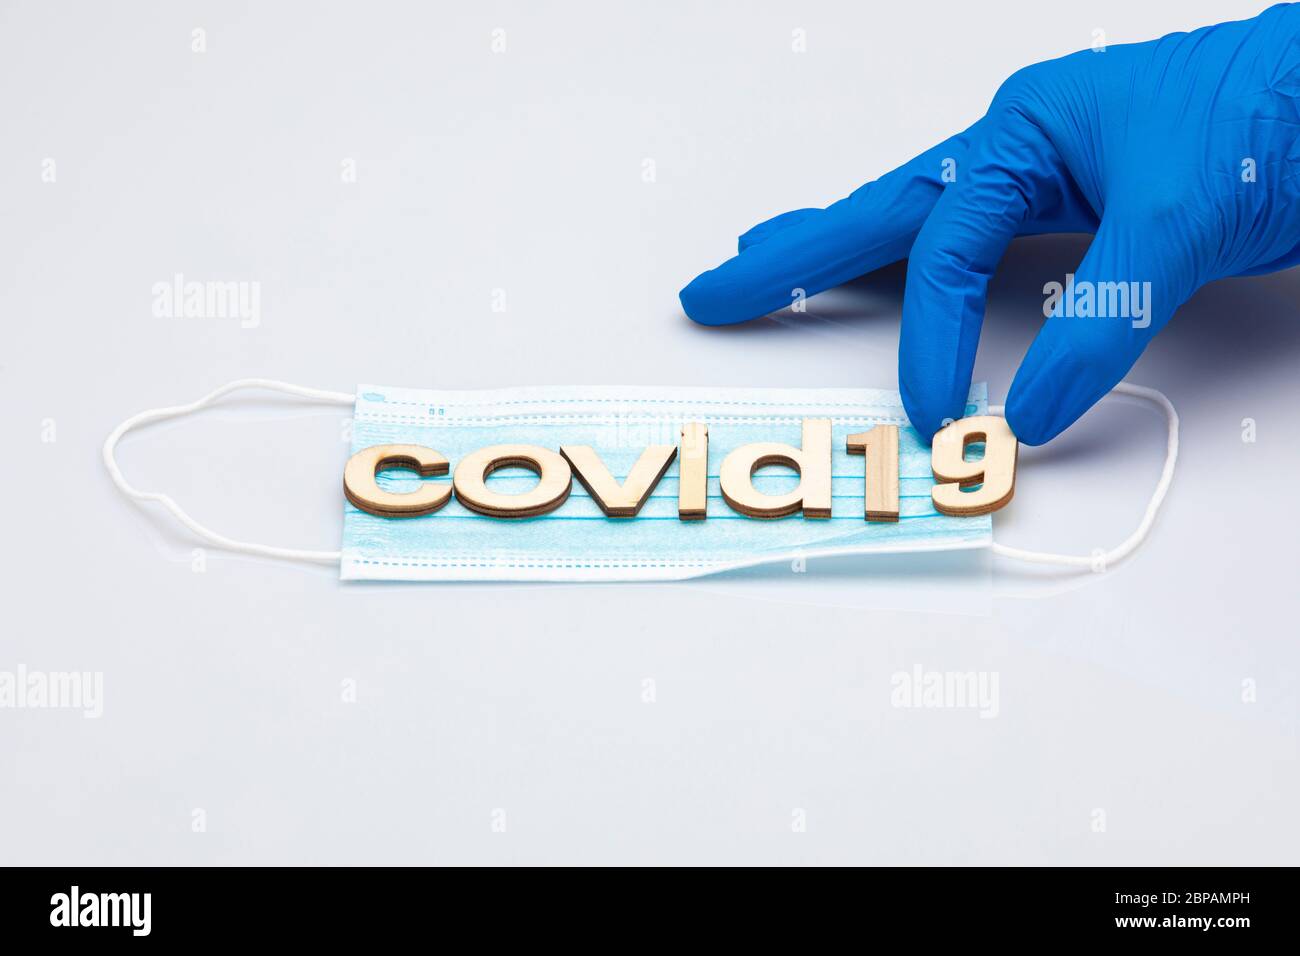 mano con un guante quirúrgico azul que sostiene la última parte de la palabra covid19 formado con letras colocadas sobre una máscara quirúrgica aislada sobre un fondo blanco Foto de stock